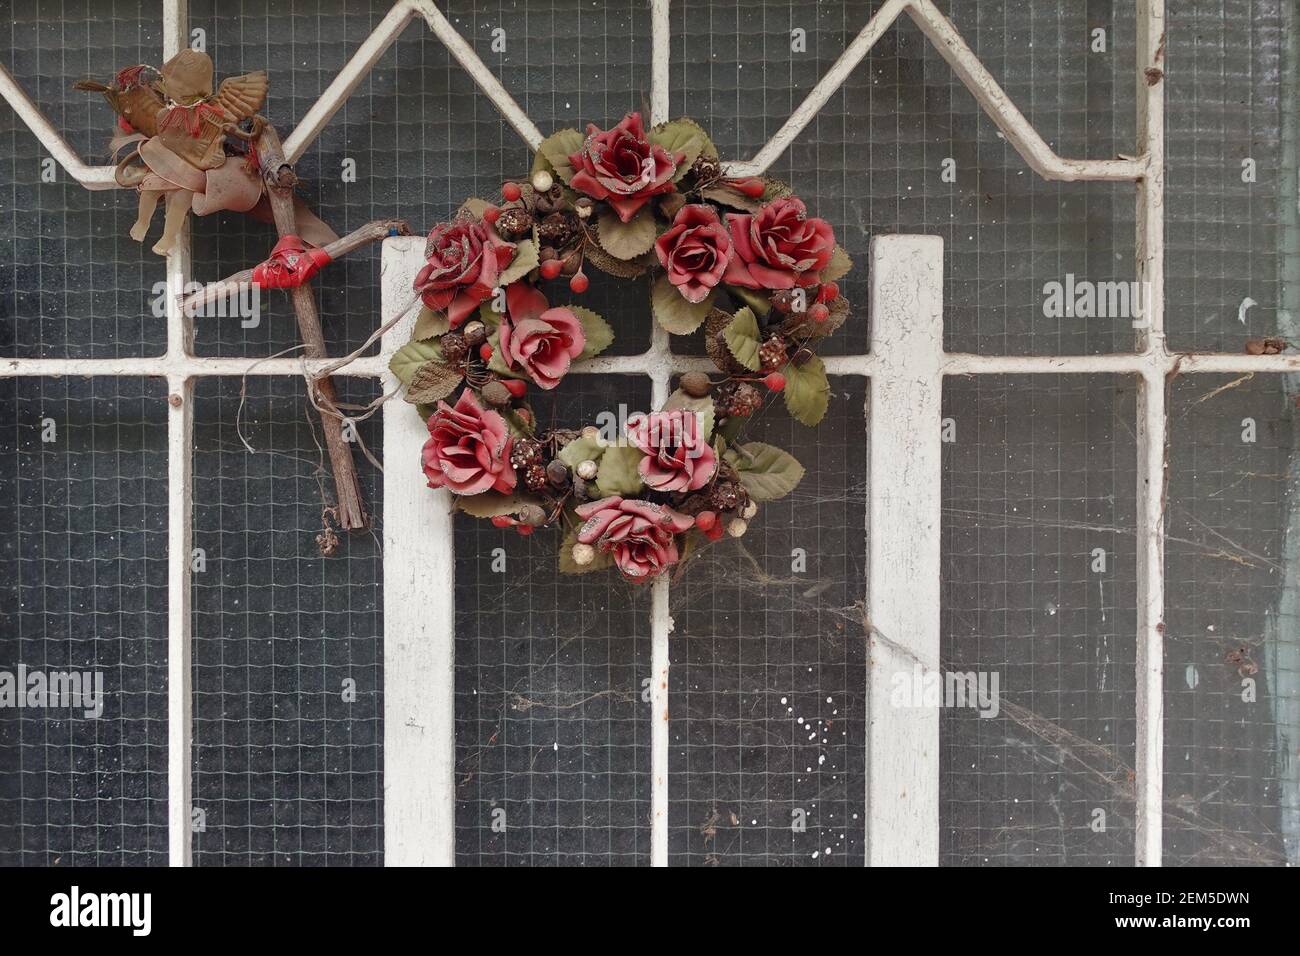 Weihnachtsdekoration Vintage-Ornamente mit Spinnennetz auf verlassene Haus Tür bedeckt. Kranz aus Kunststoff roten Rosenblüten mit Leier und Holz cros Stockfoto